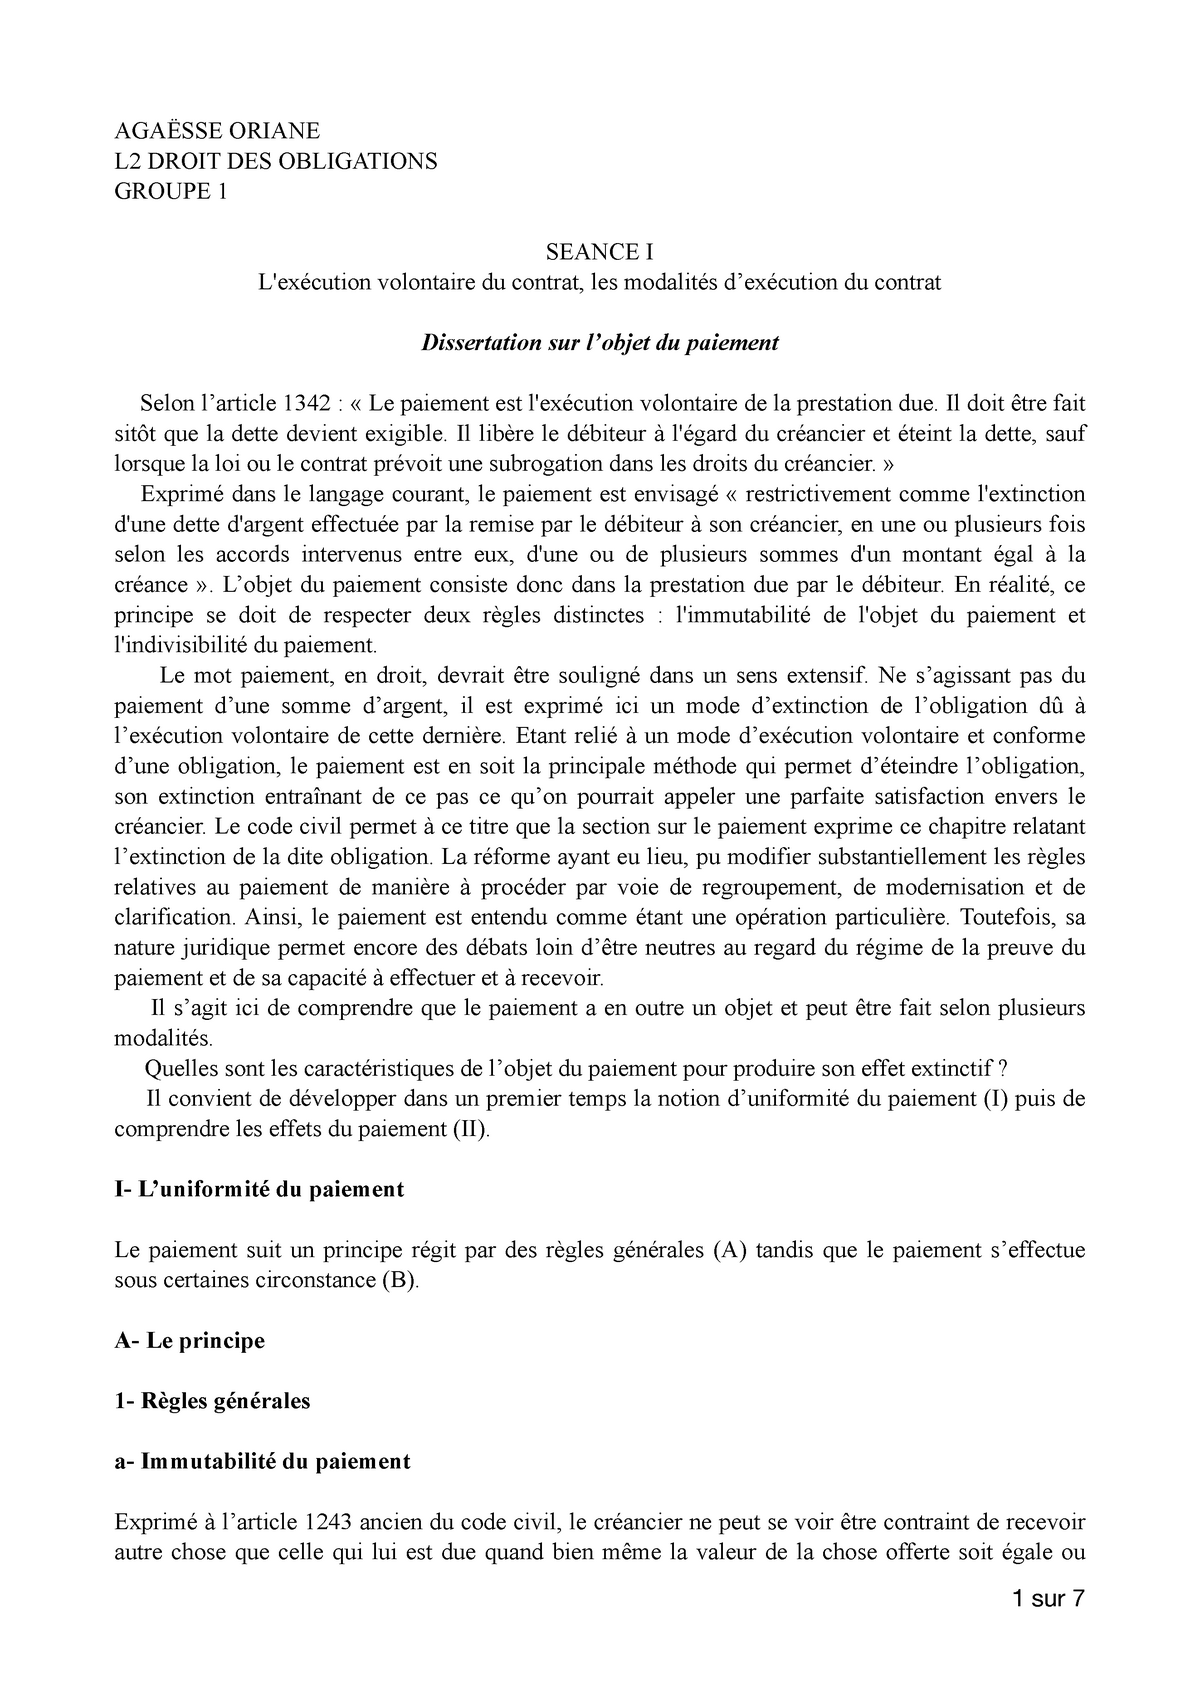 dissertation droit des obligations l2 pdf